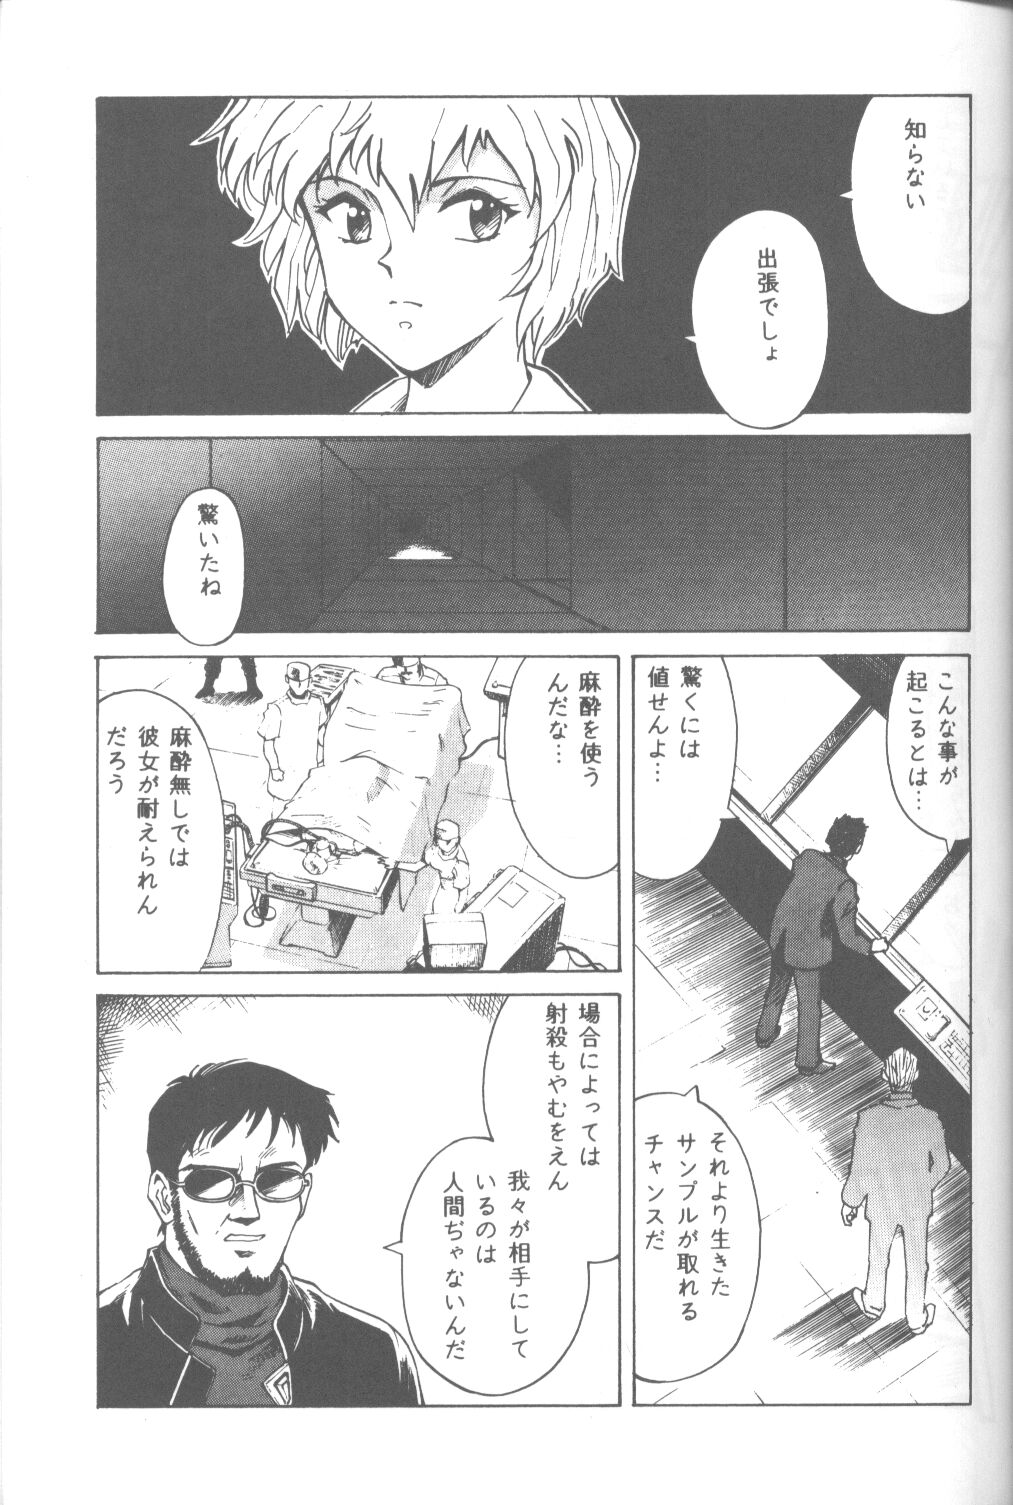 [Takahiro Kutugi] Friends Yes We're (Evangelion) page 44 full